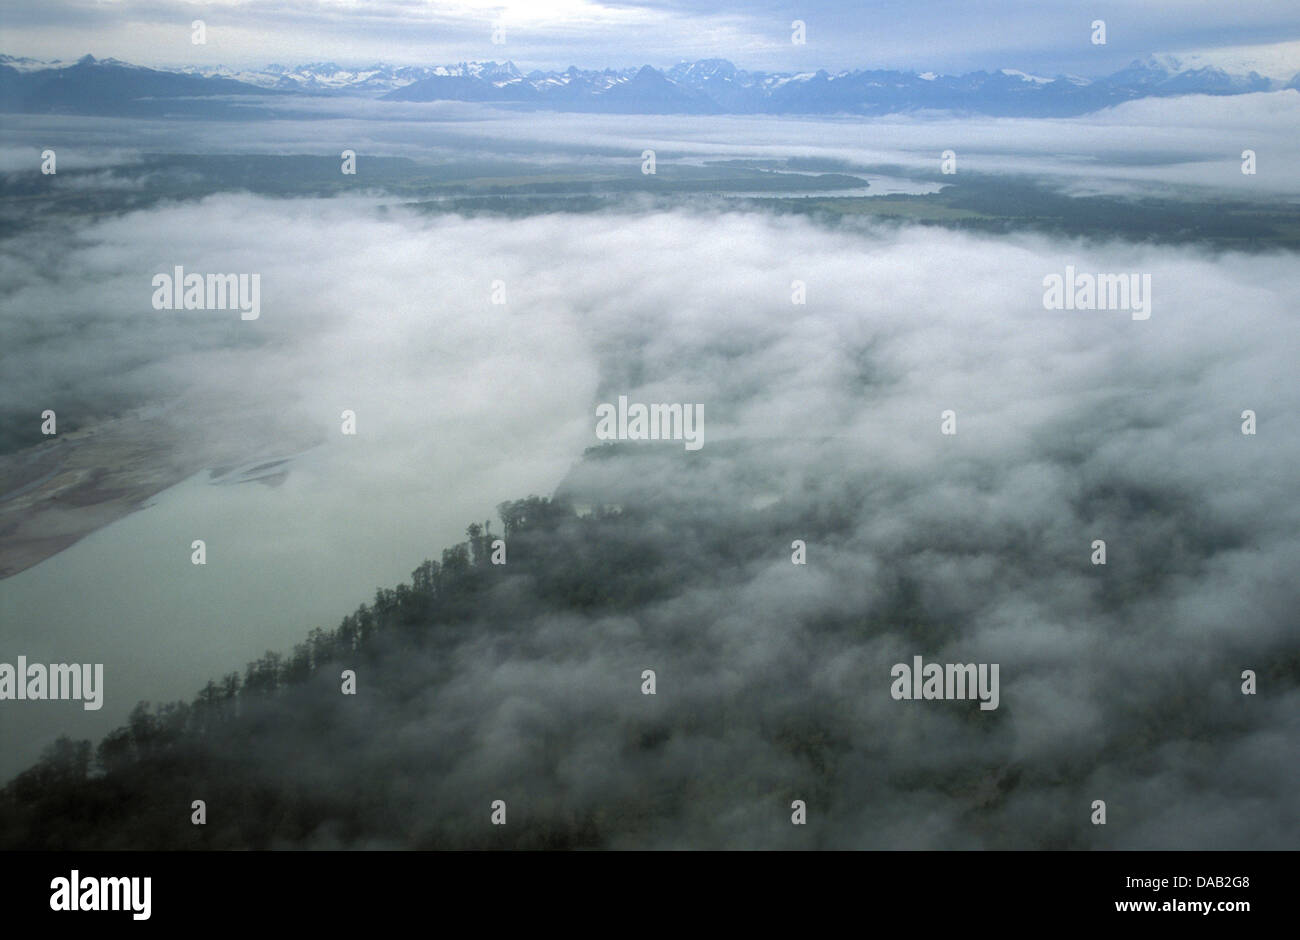 Llanura Costera, Cook Inlet, Chigmit Mountains, Gama Aleutianas, Alaska, EE.UU., niebla, nubes, por encima de las nubes, bosques frondosos, tormentoso, ver Foto de stock